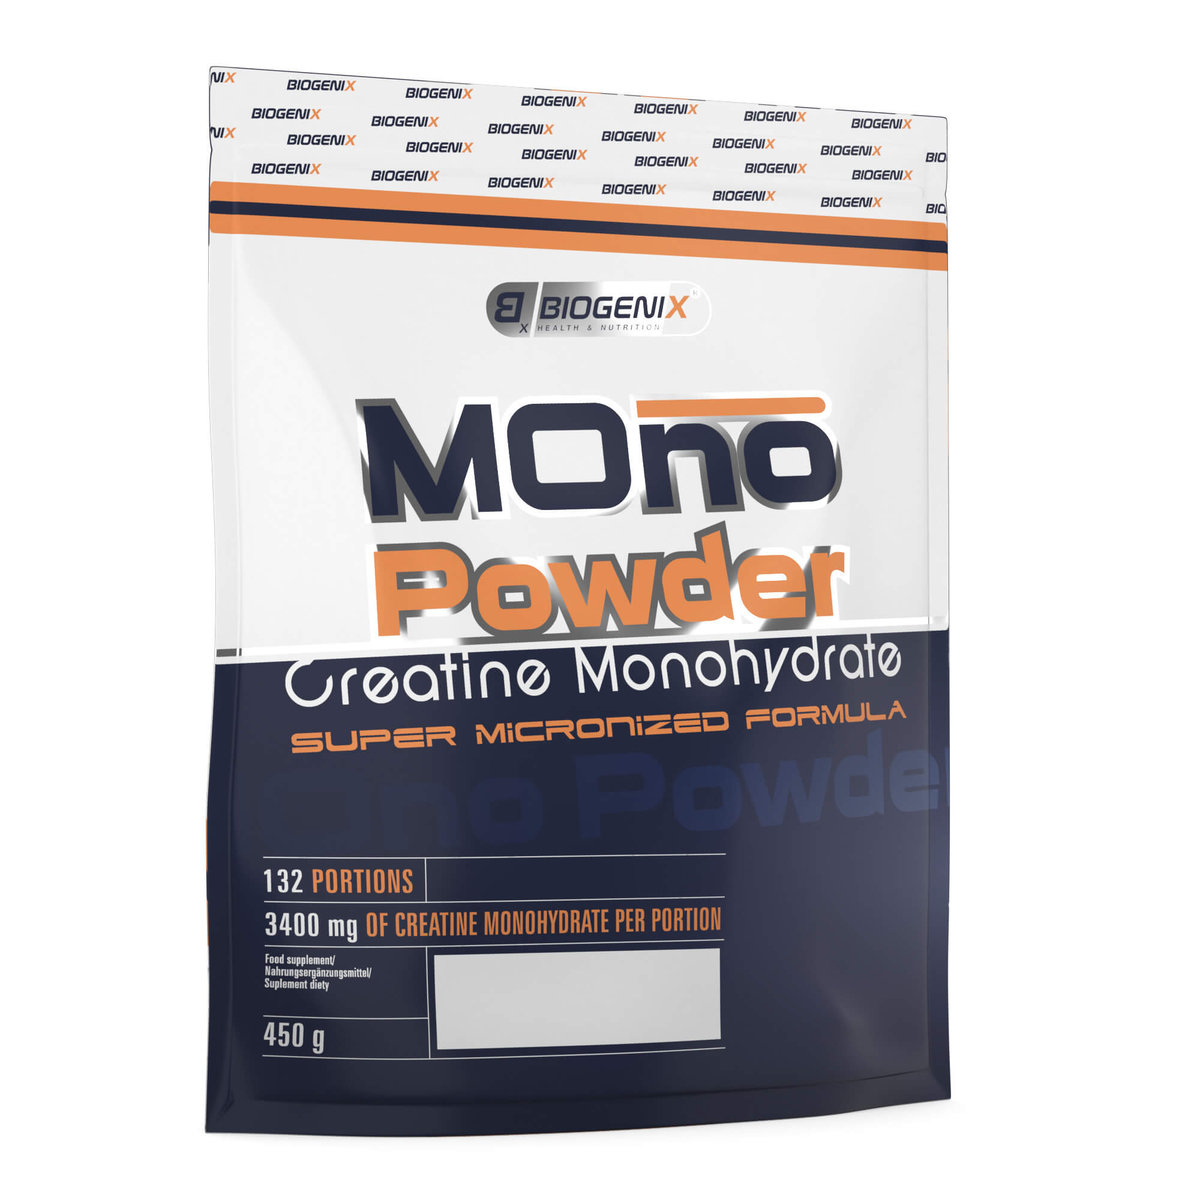 Biogenix Mono Powder - 450 g - Natural